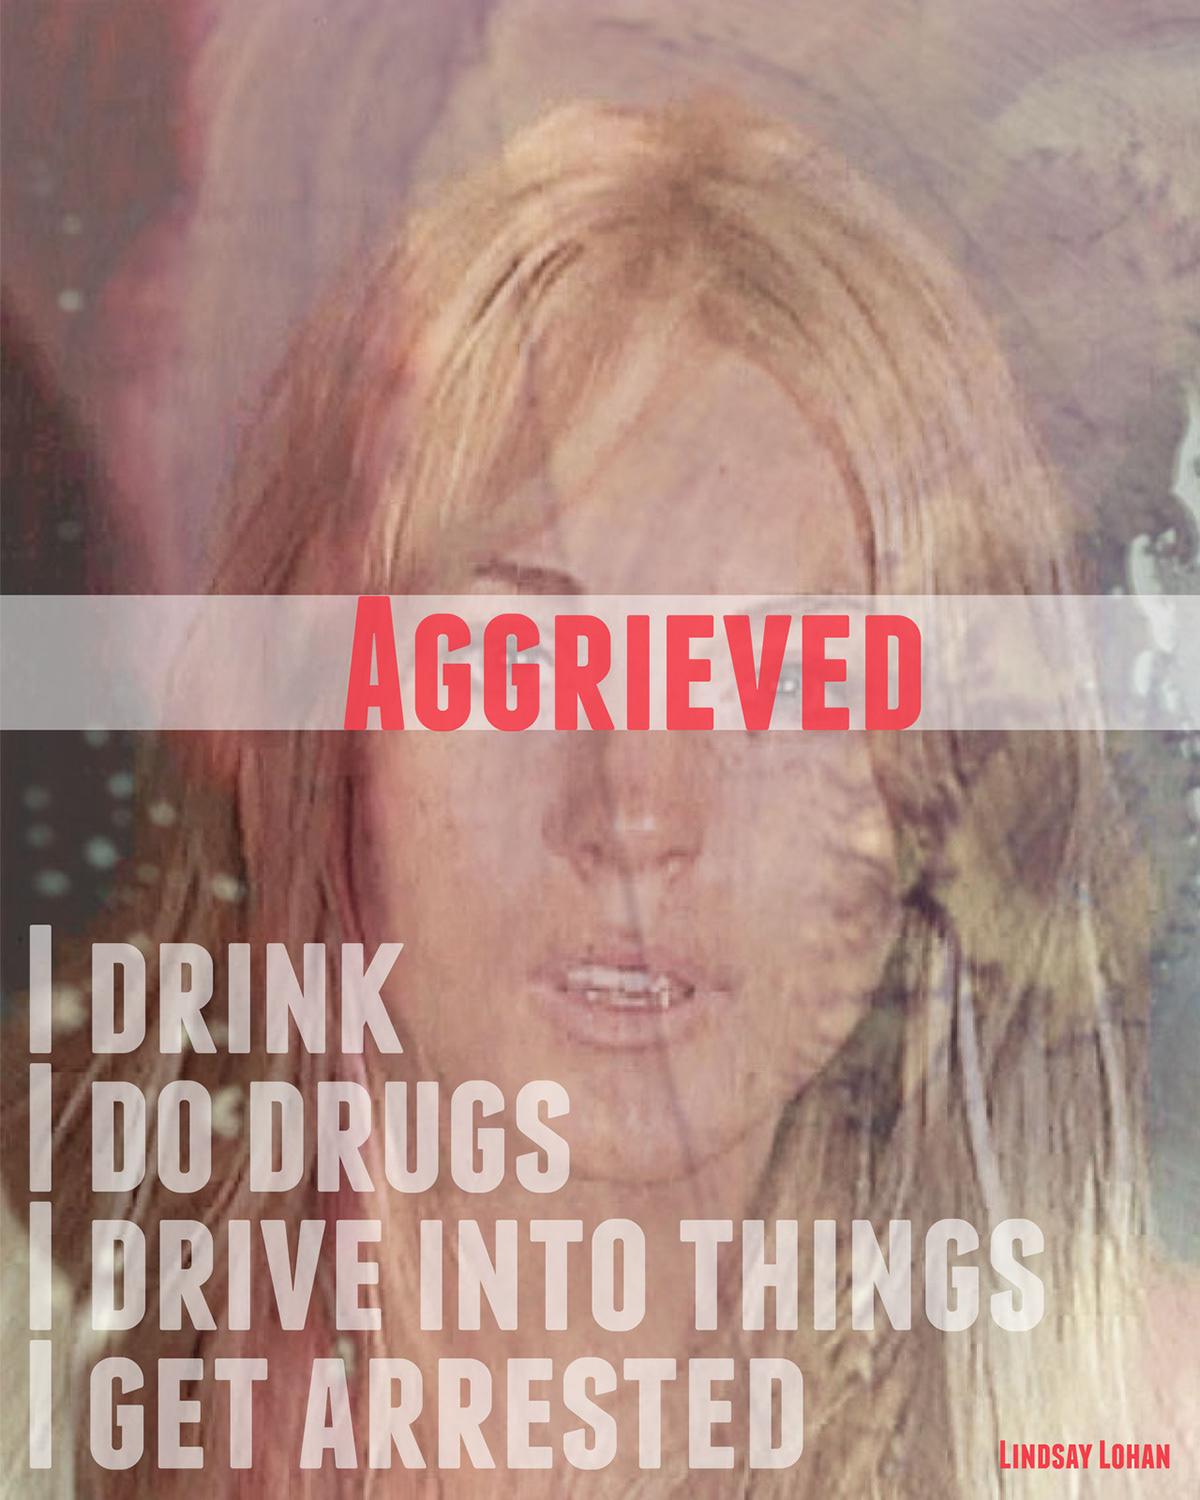 Celebrity arrested drunkindecisions Poster Design Drugs Trouble